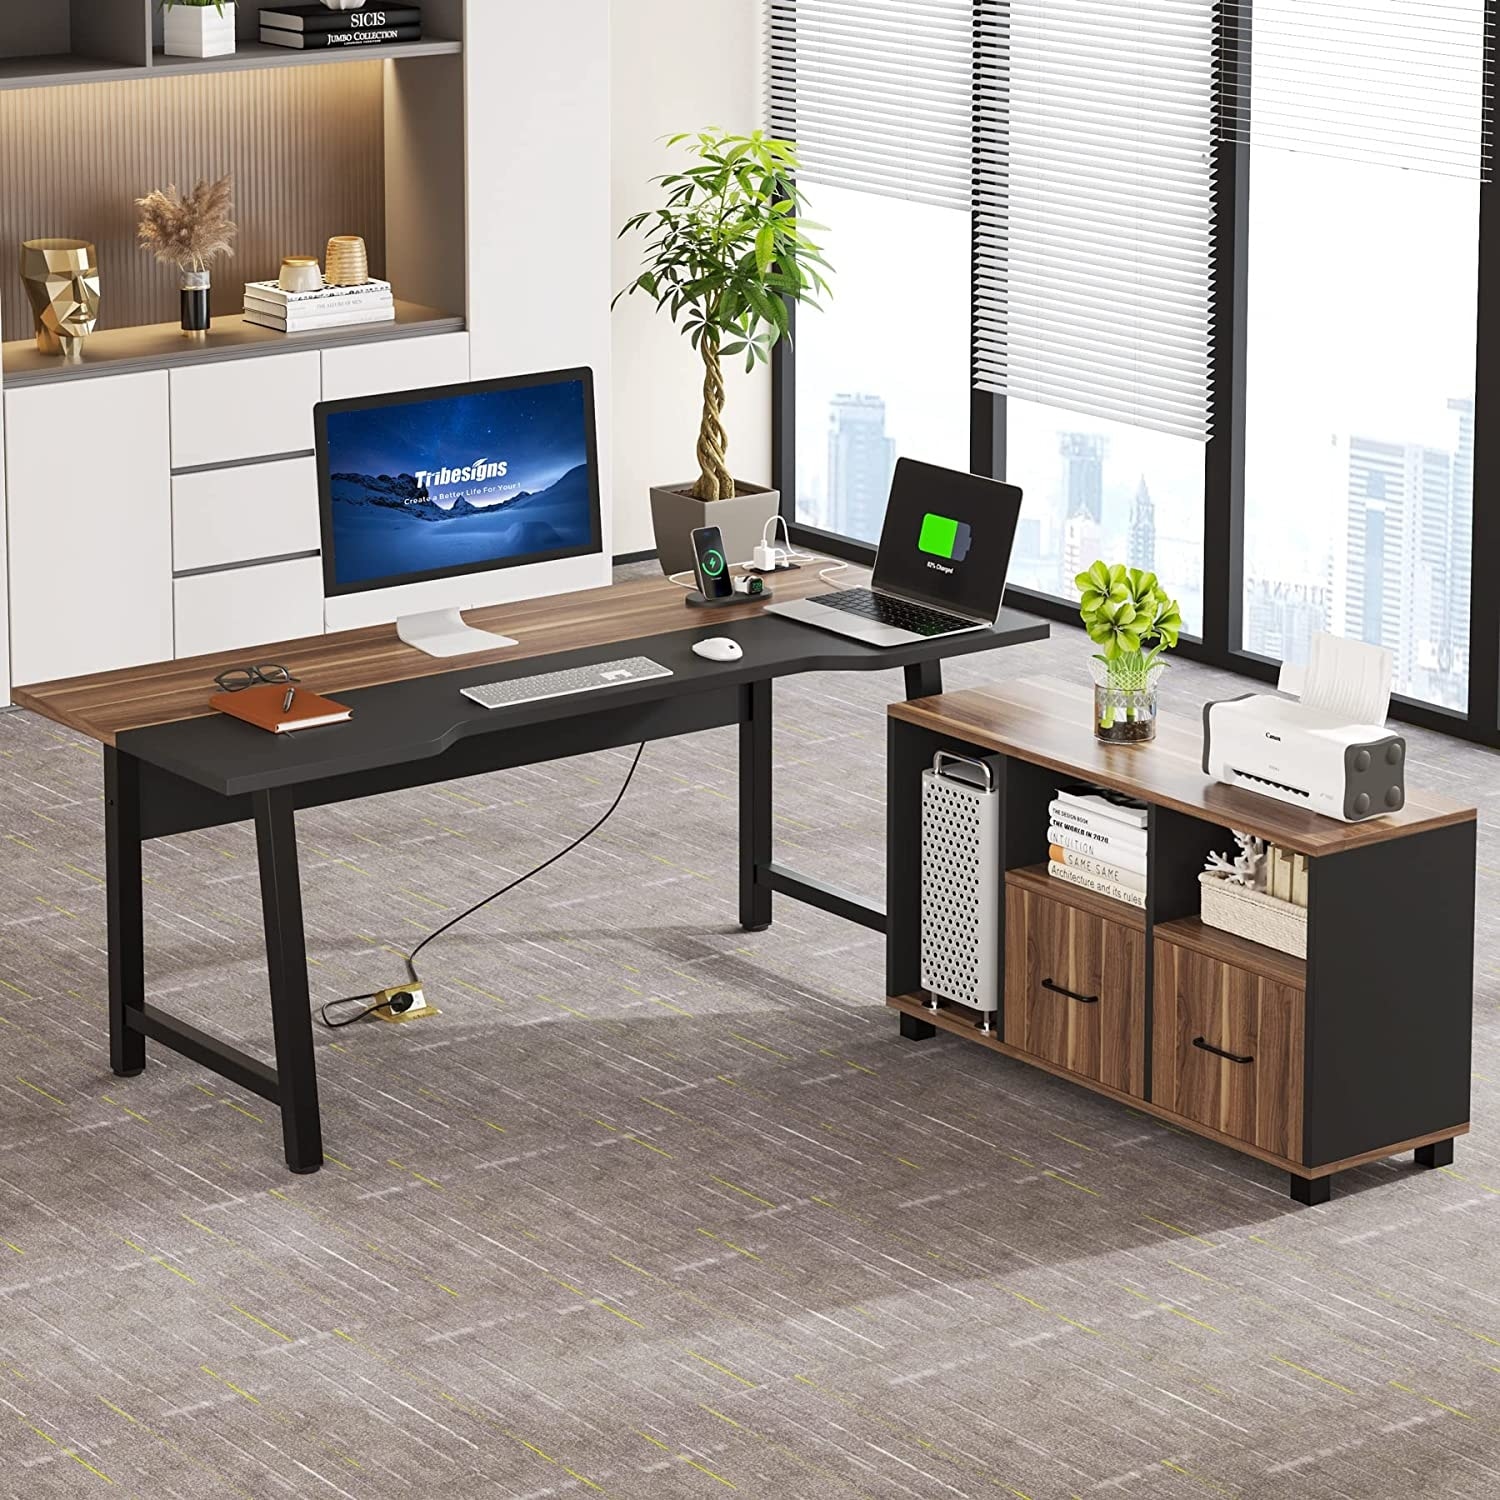 70.8-Inch Executive Desk, Large Computer Office Desk Workstation - On Sale  - Bed Bath & Beyond - 37969704